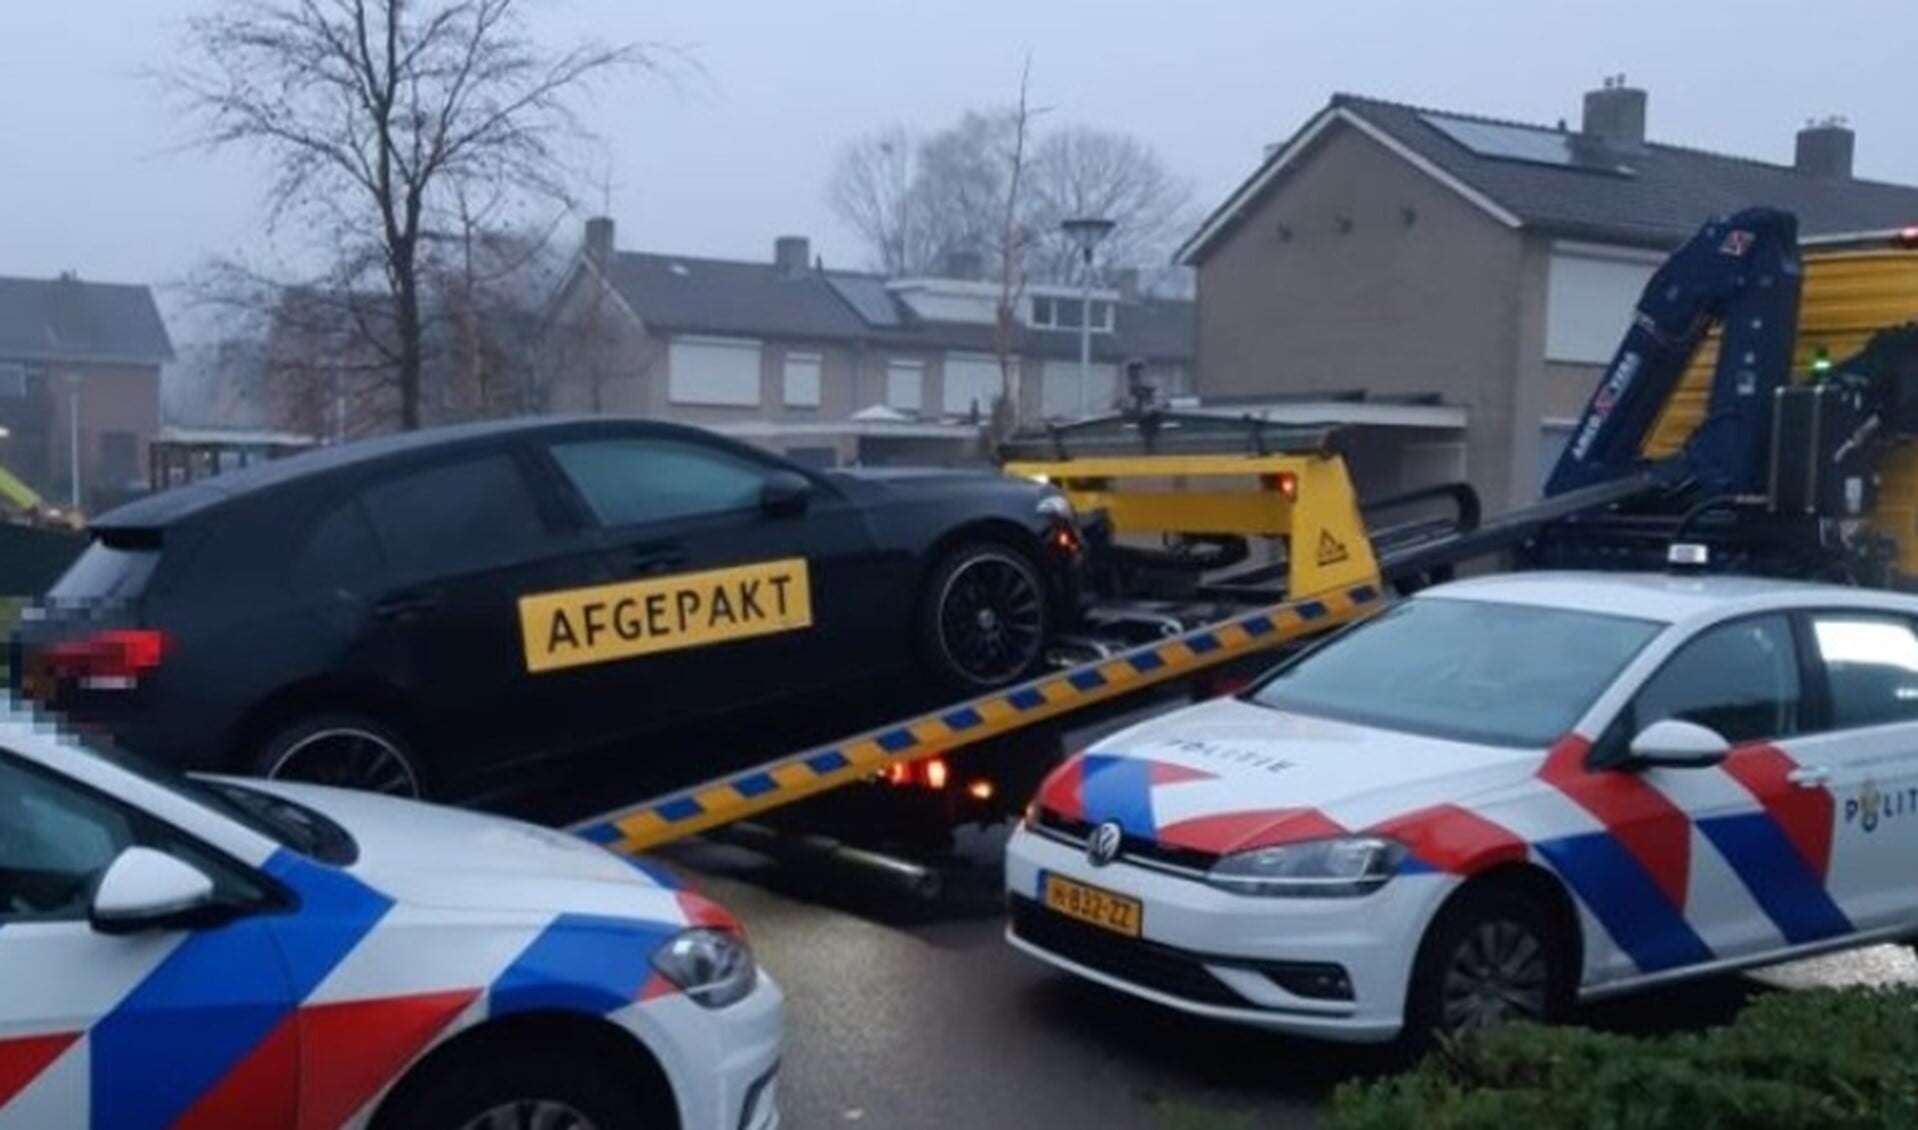 Ook een dure auto werd in beslag genomen. (Foto: Politie.nl)